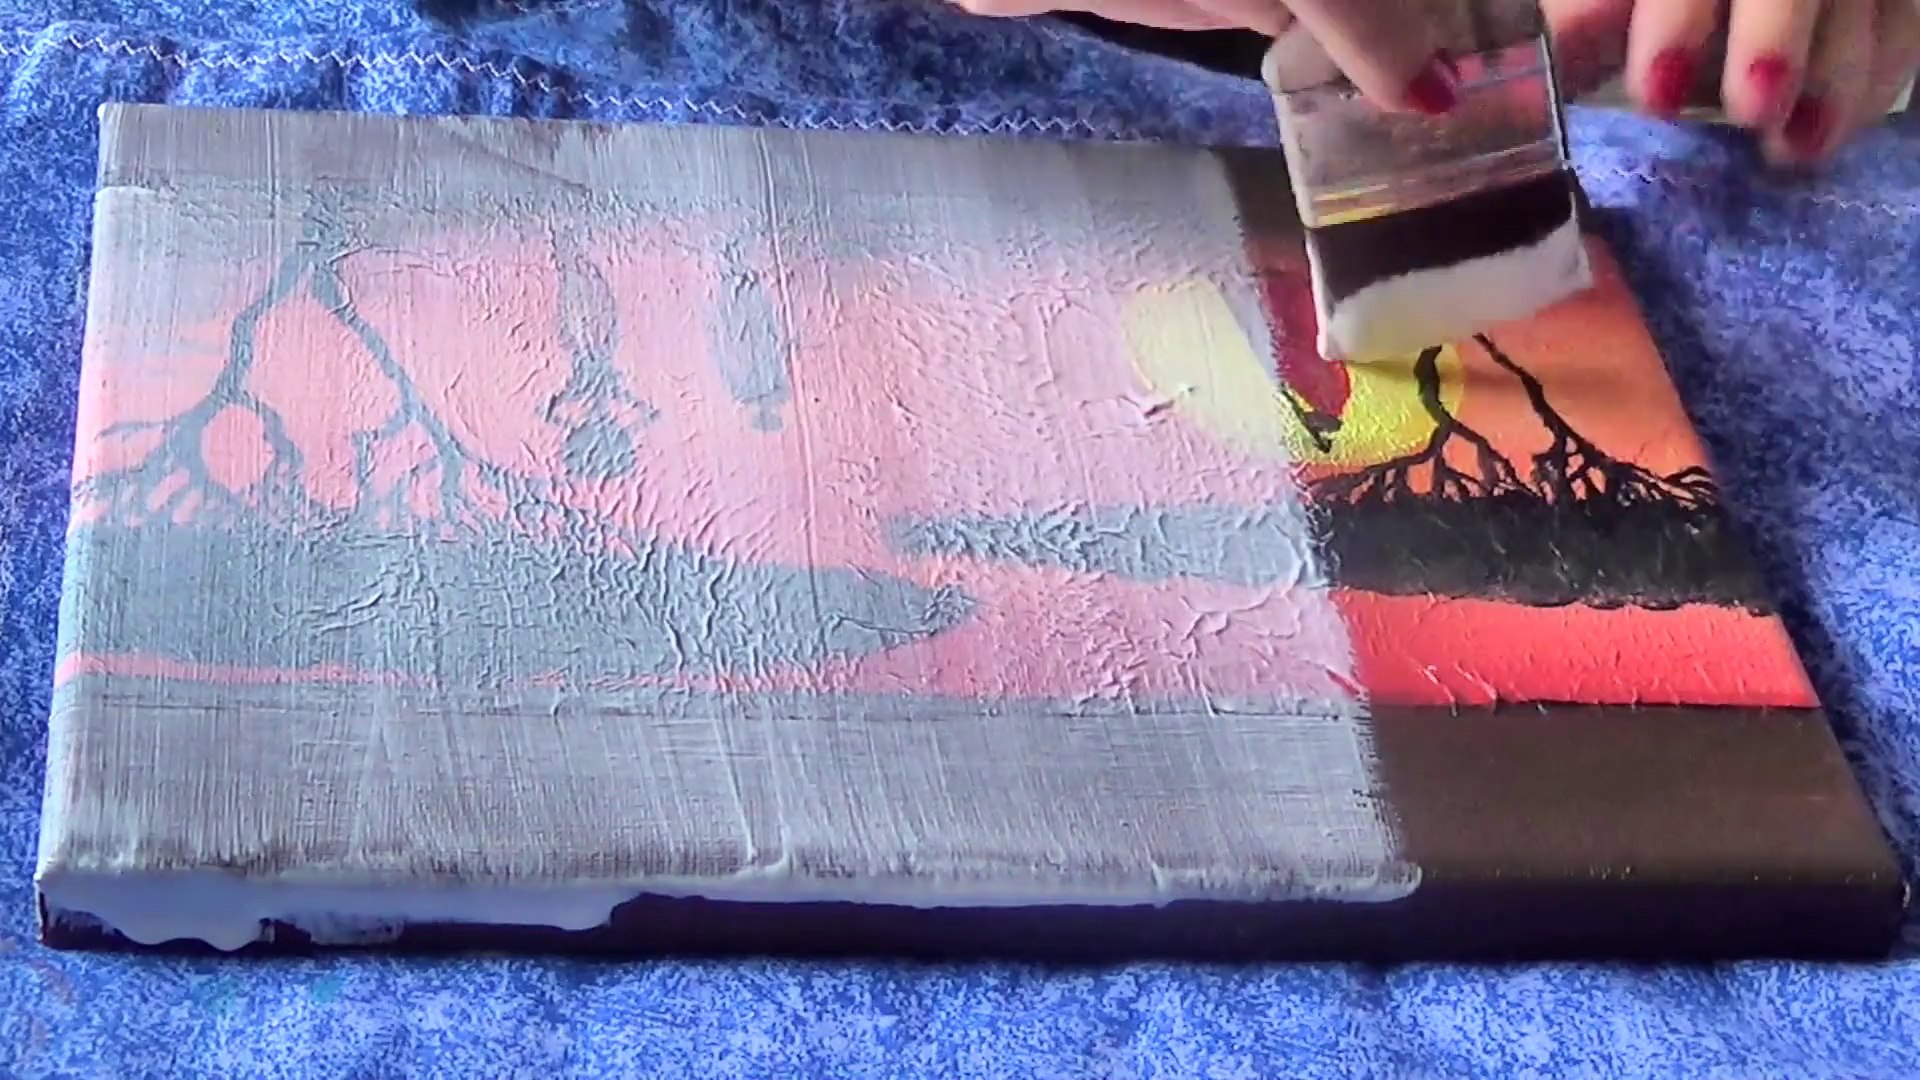 Tuto: Réaliser un tableau avec des serviettes en papier - Vidéo Dailymotion